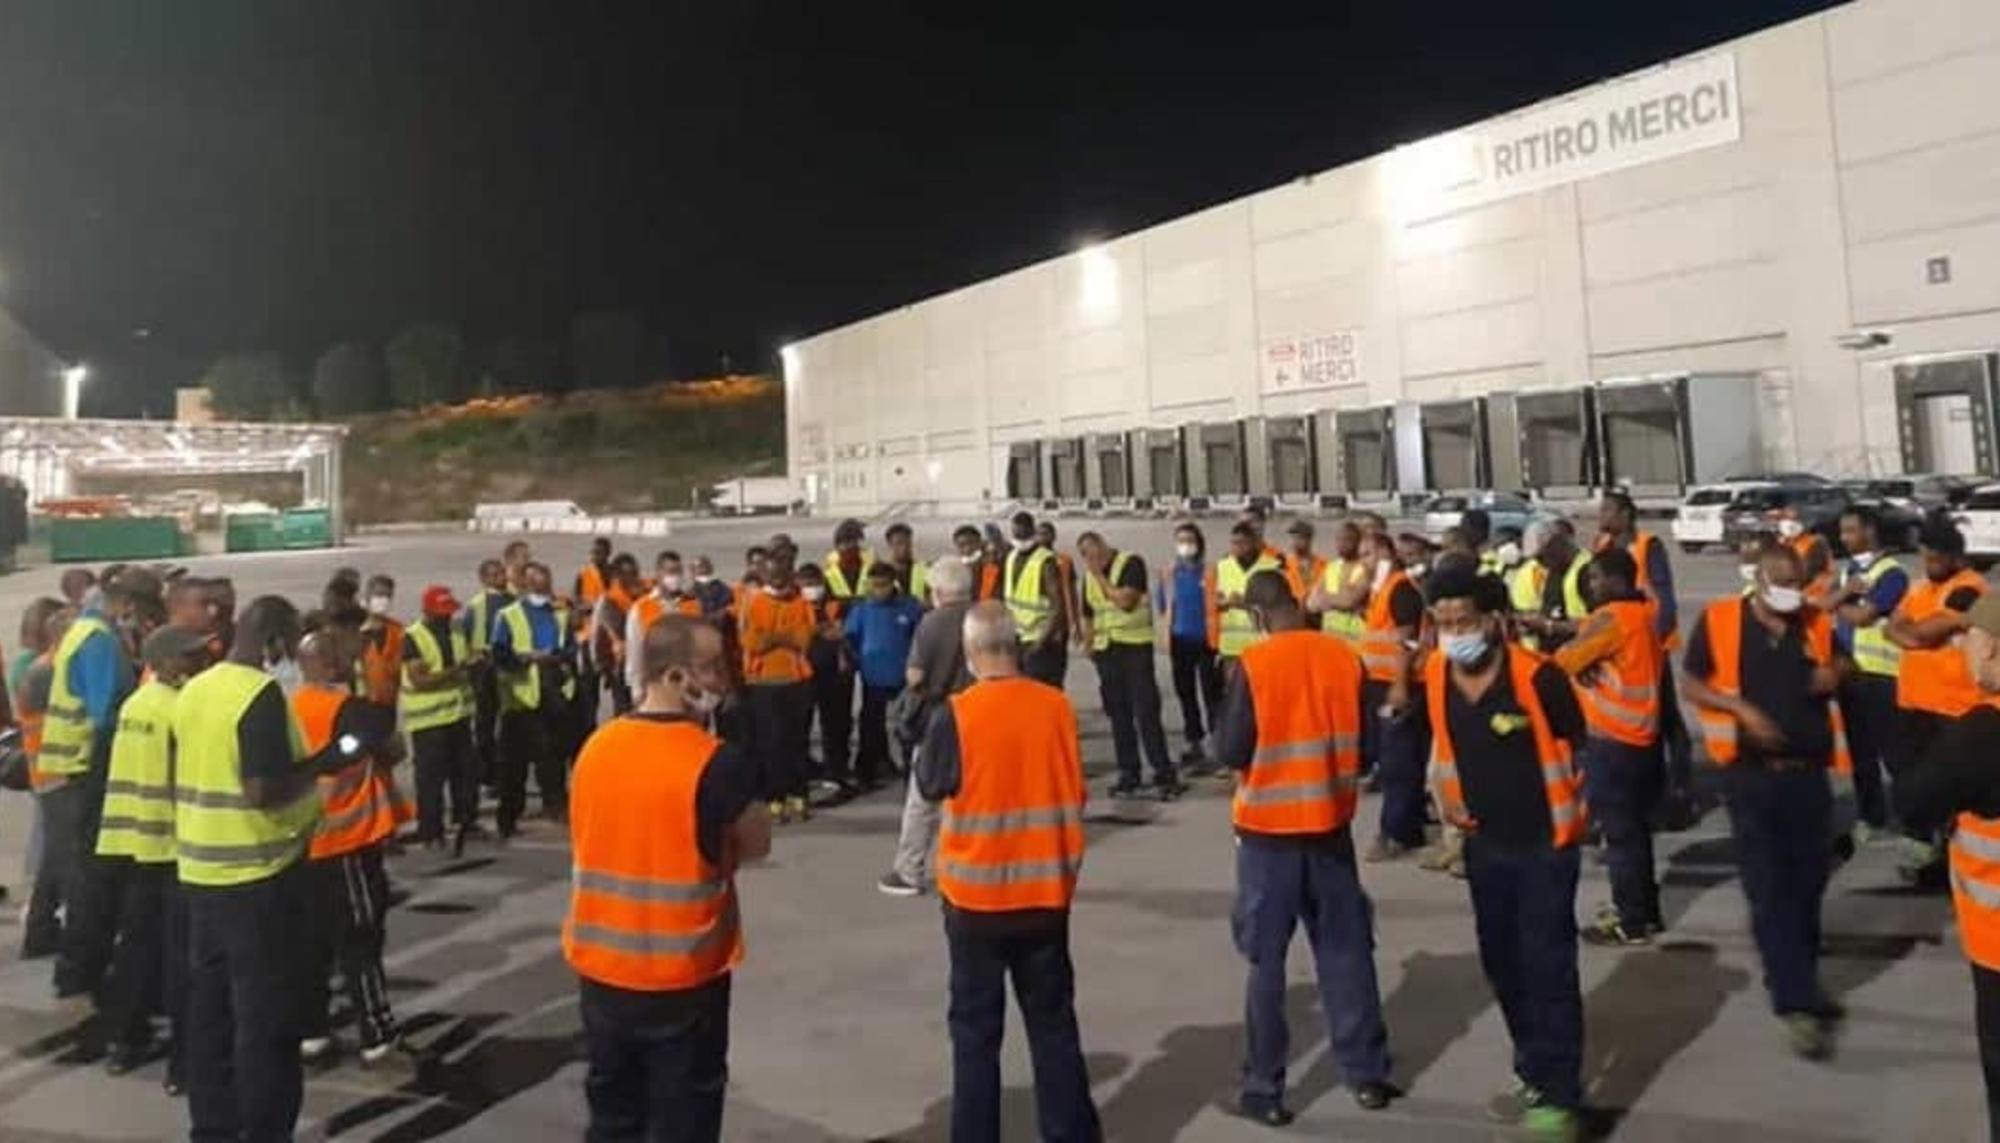 Reunión de trabajadores en huelga en un hub logístico a las afueras de Milán